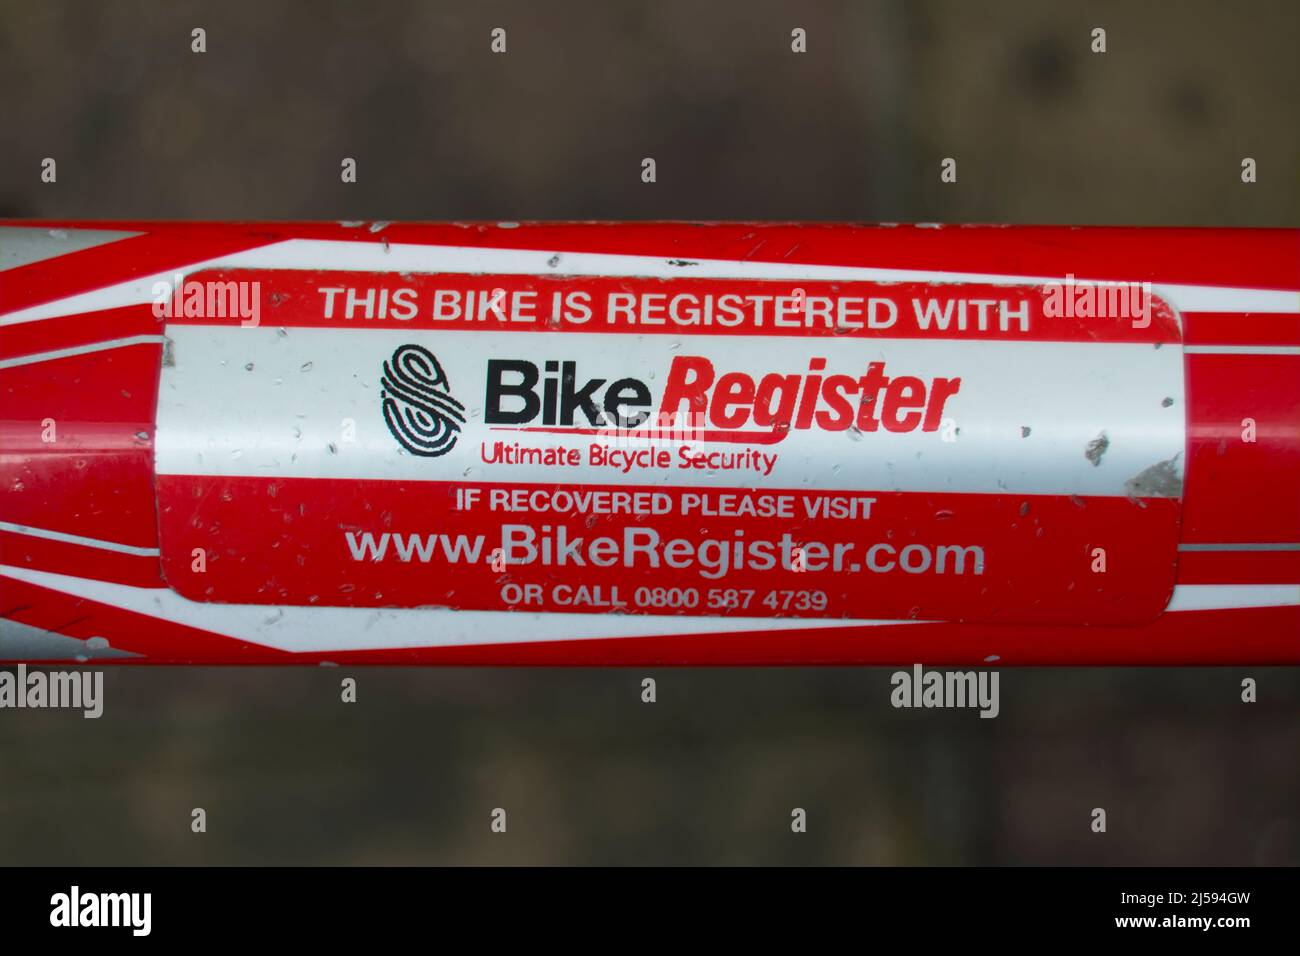 Fahrradrahmenetikett, das angibt, dass der Fahrradweg beim britischen Fahrradregister eingetragen wurde, um Fahrraddiebstahl und illegalen Weiterverkauf zu verhindern. Stockfoto